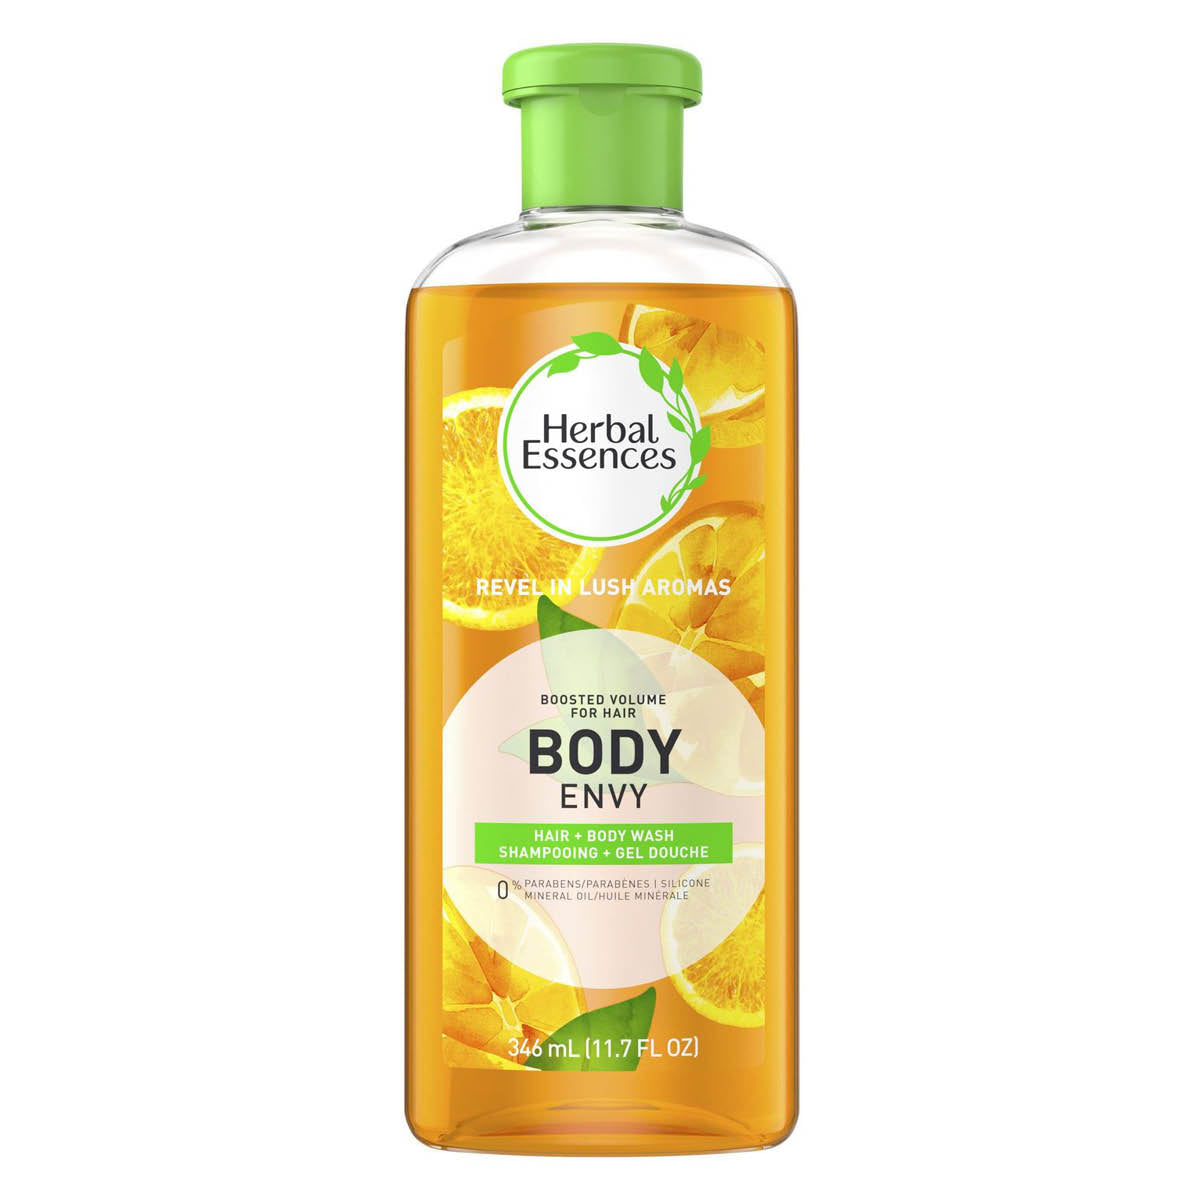 Herbal Essences Body Envy Shampoo 346 mL